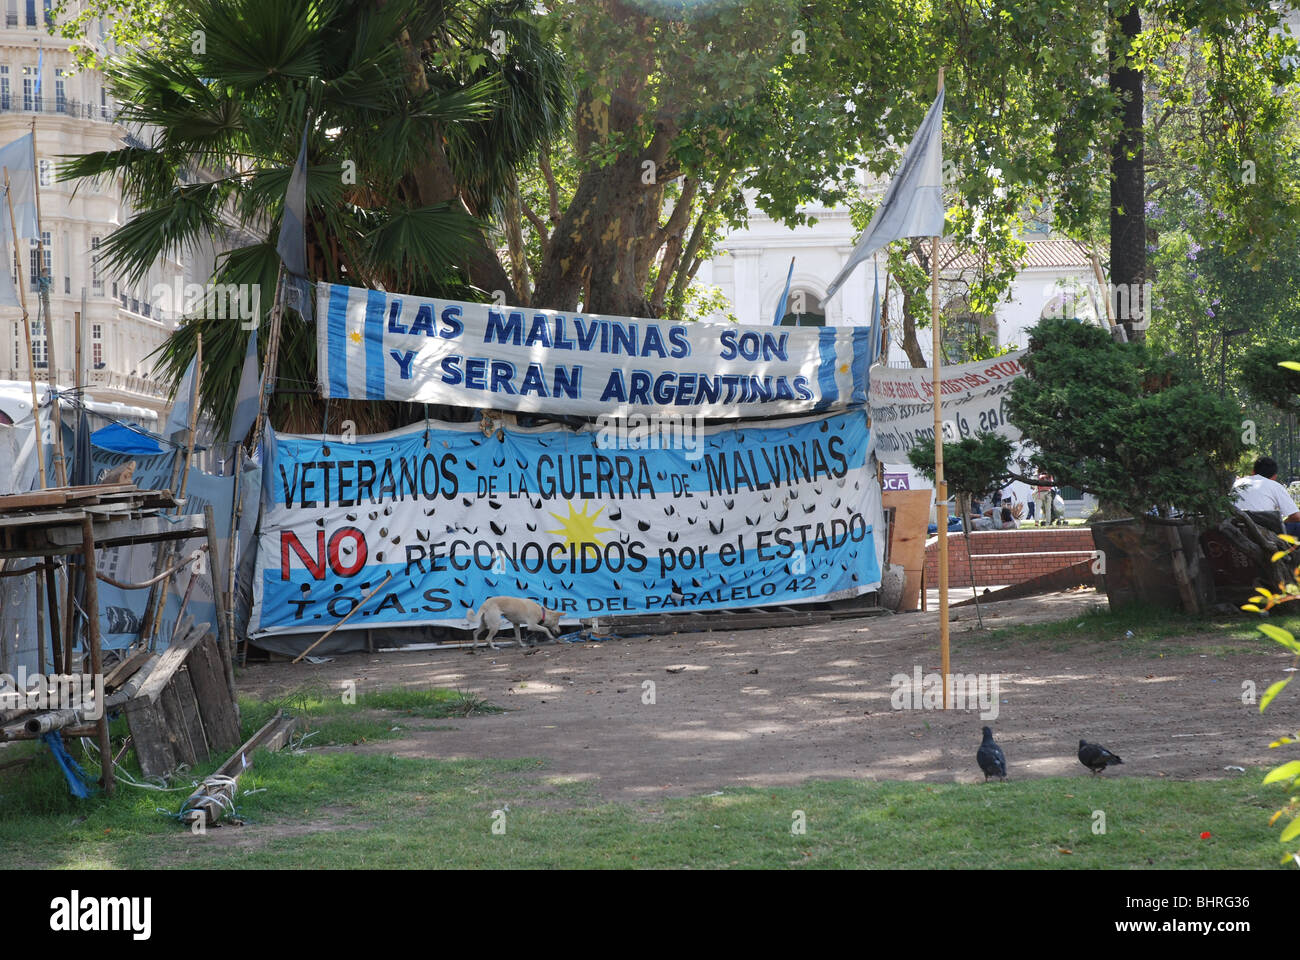 Manifestation à Buenos Aires ; se souvenir des anciens combattants de la guerre des Malouines de 1982 Banque D'Images